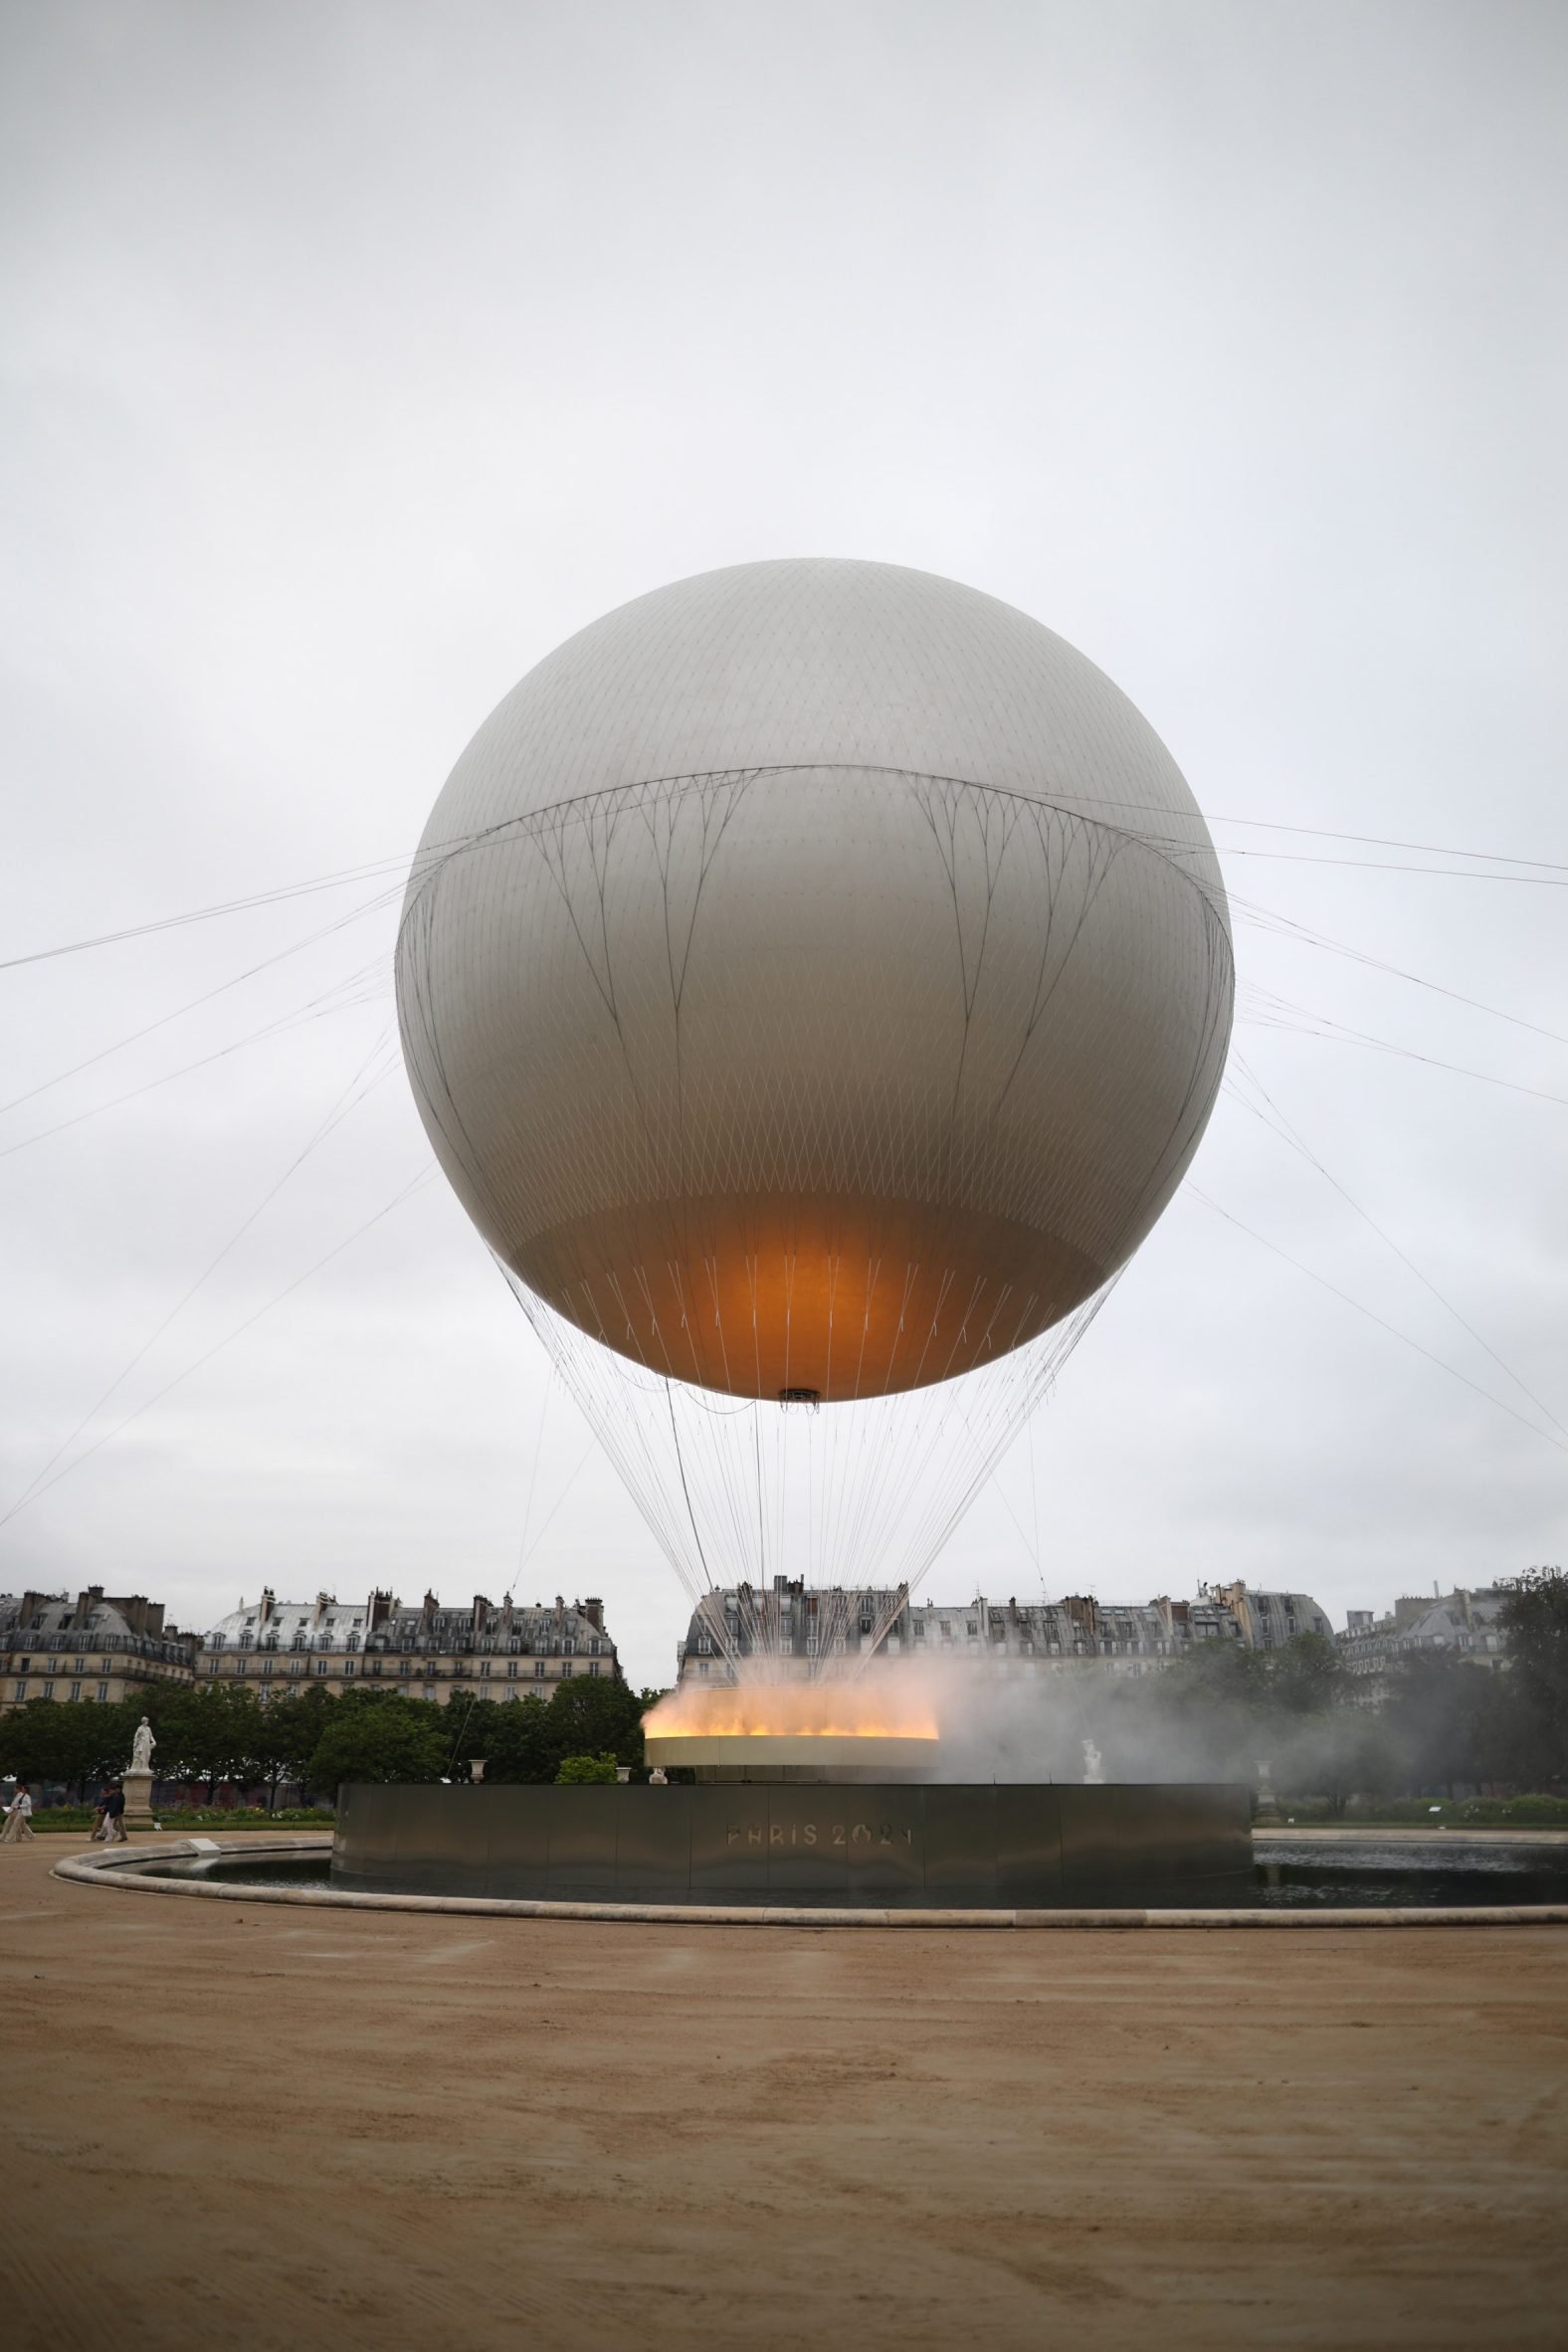 Paris 2024 Olympic cauldron that looks like a hot-air balloon